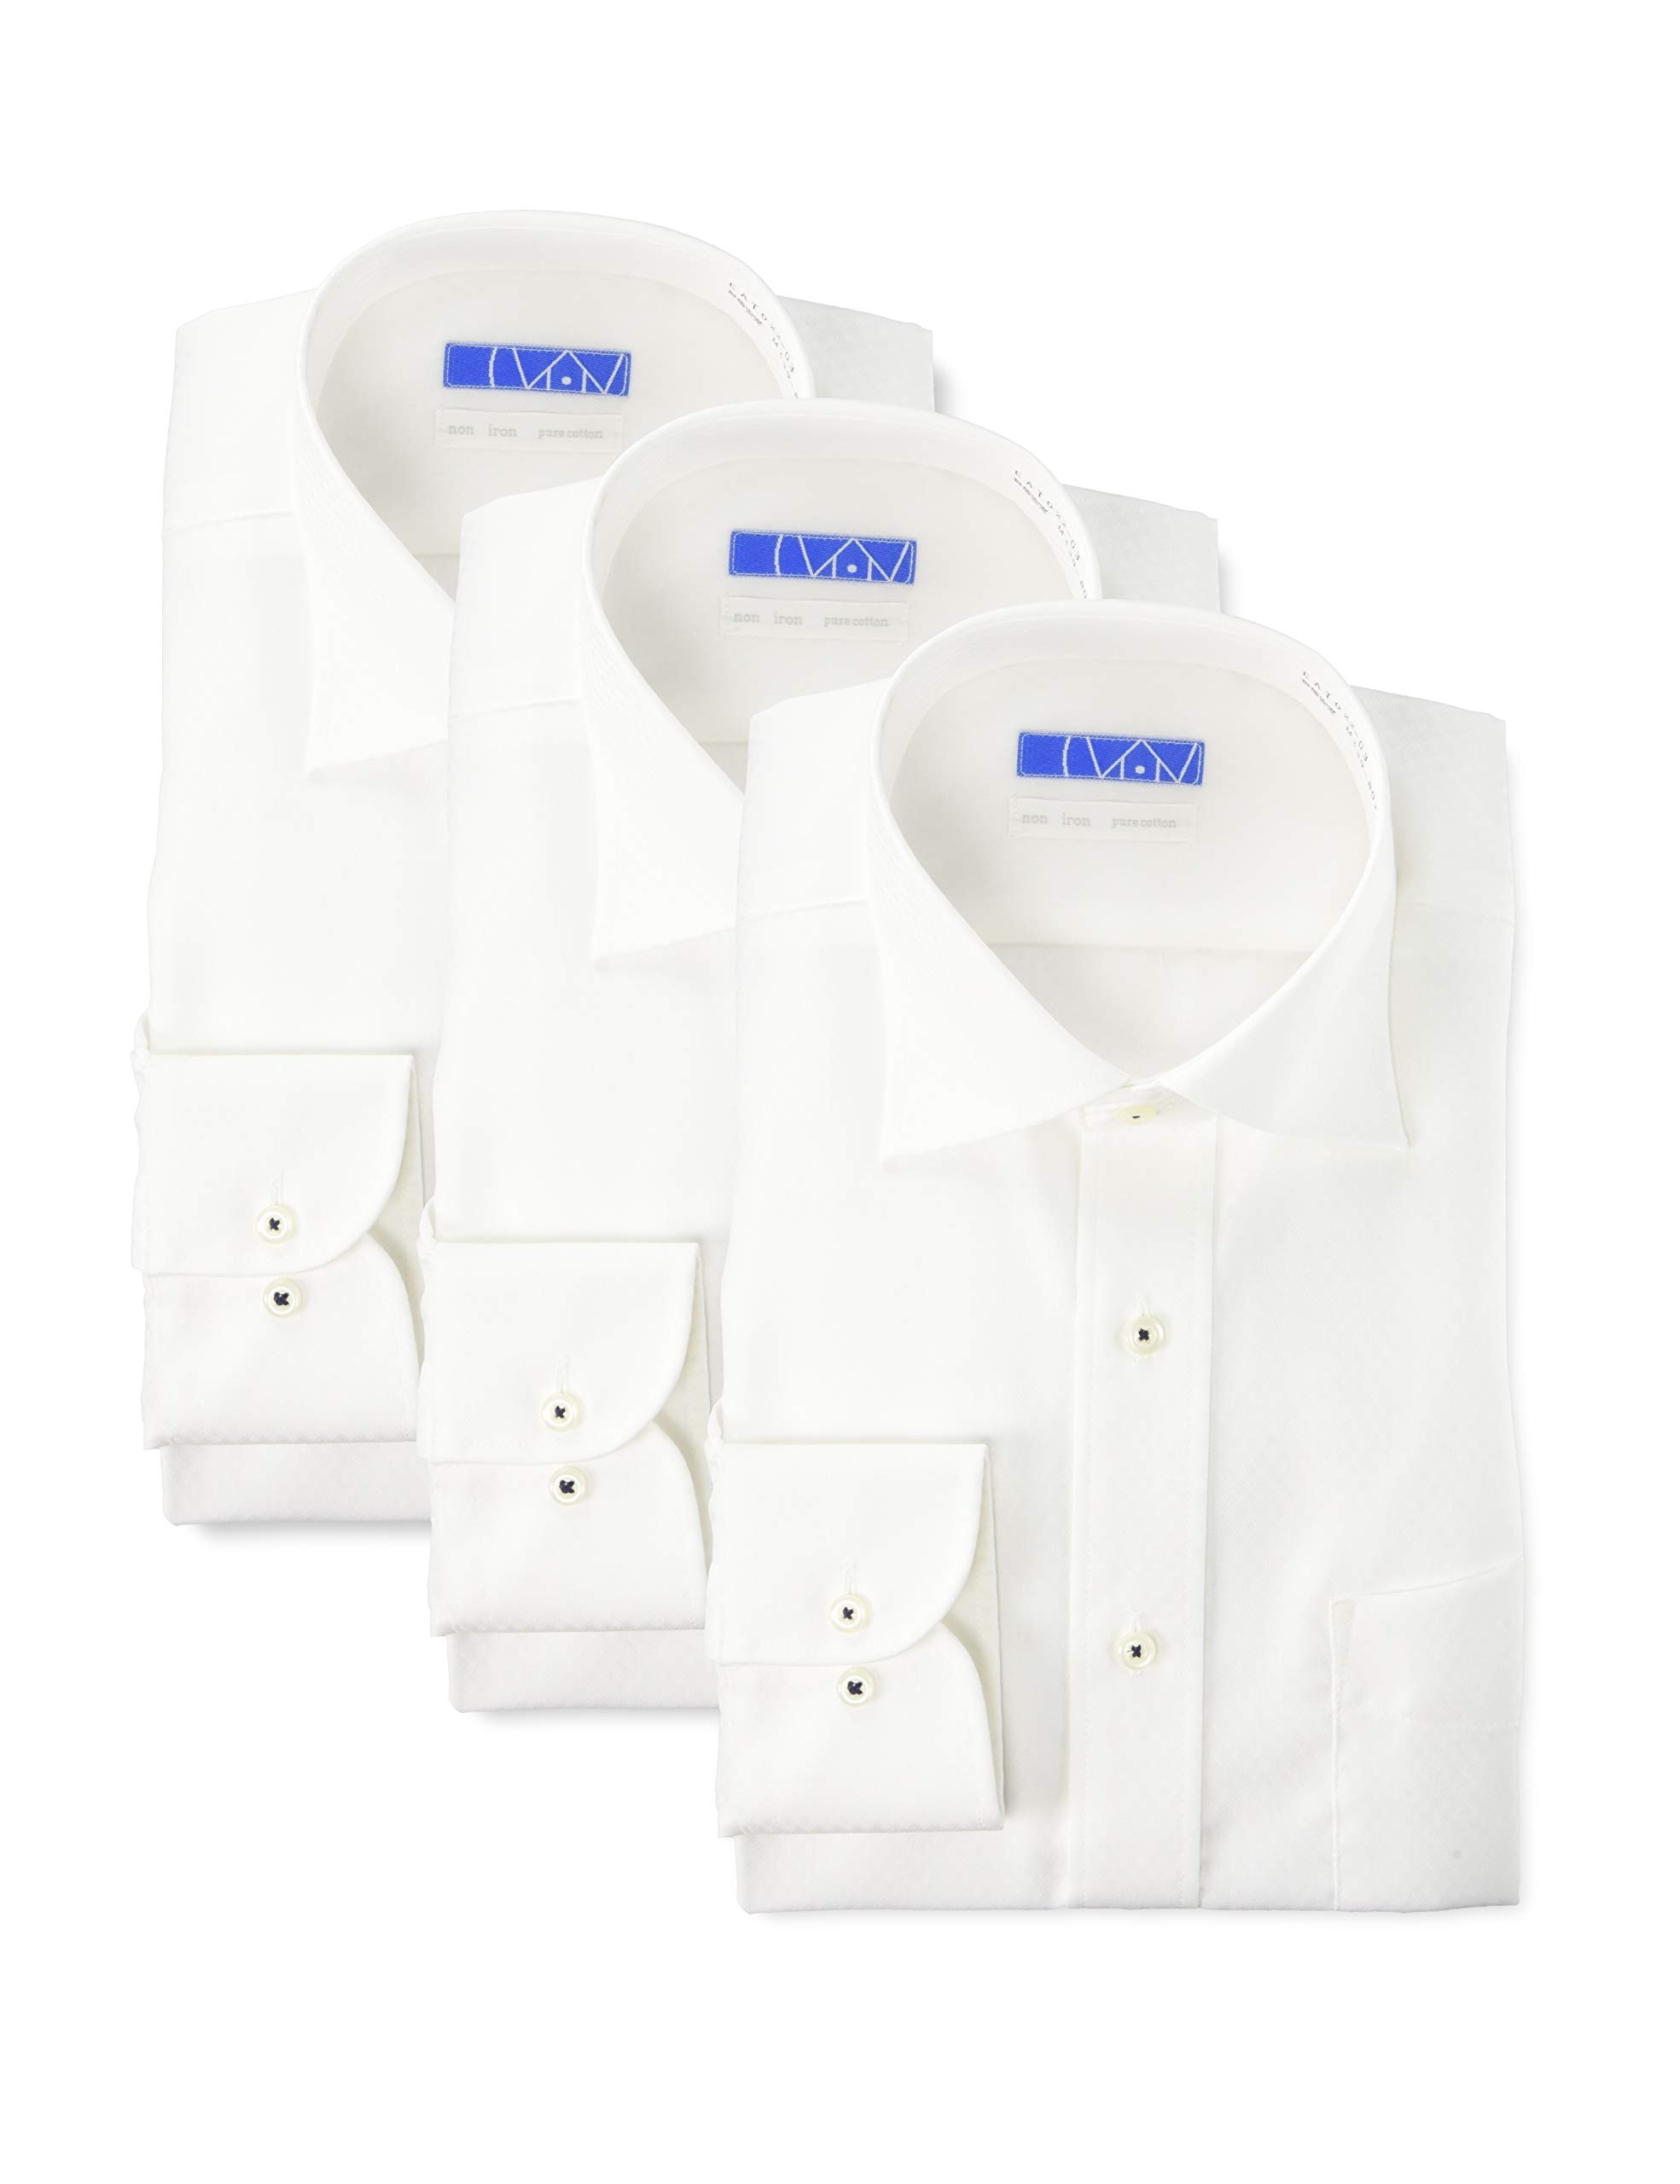  ノーアイロン 長袖ワイシャツ 3枚セット 洗って干してそのまま着る 綿100% の優しい着心地 シンプルがかっこいい シーンを選ばないデザイン 超形態安定 EATO-3SET メンズ 19 白3枚(ドビーチェック)(ワイド3) 首回り39cm裄丈82cm